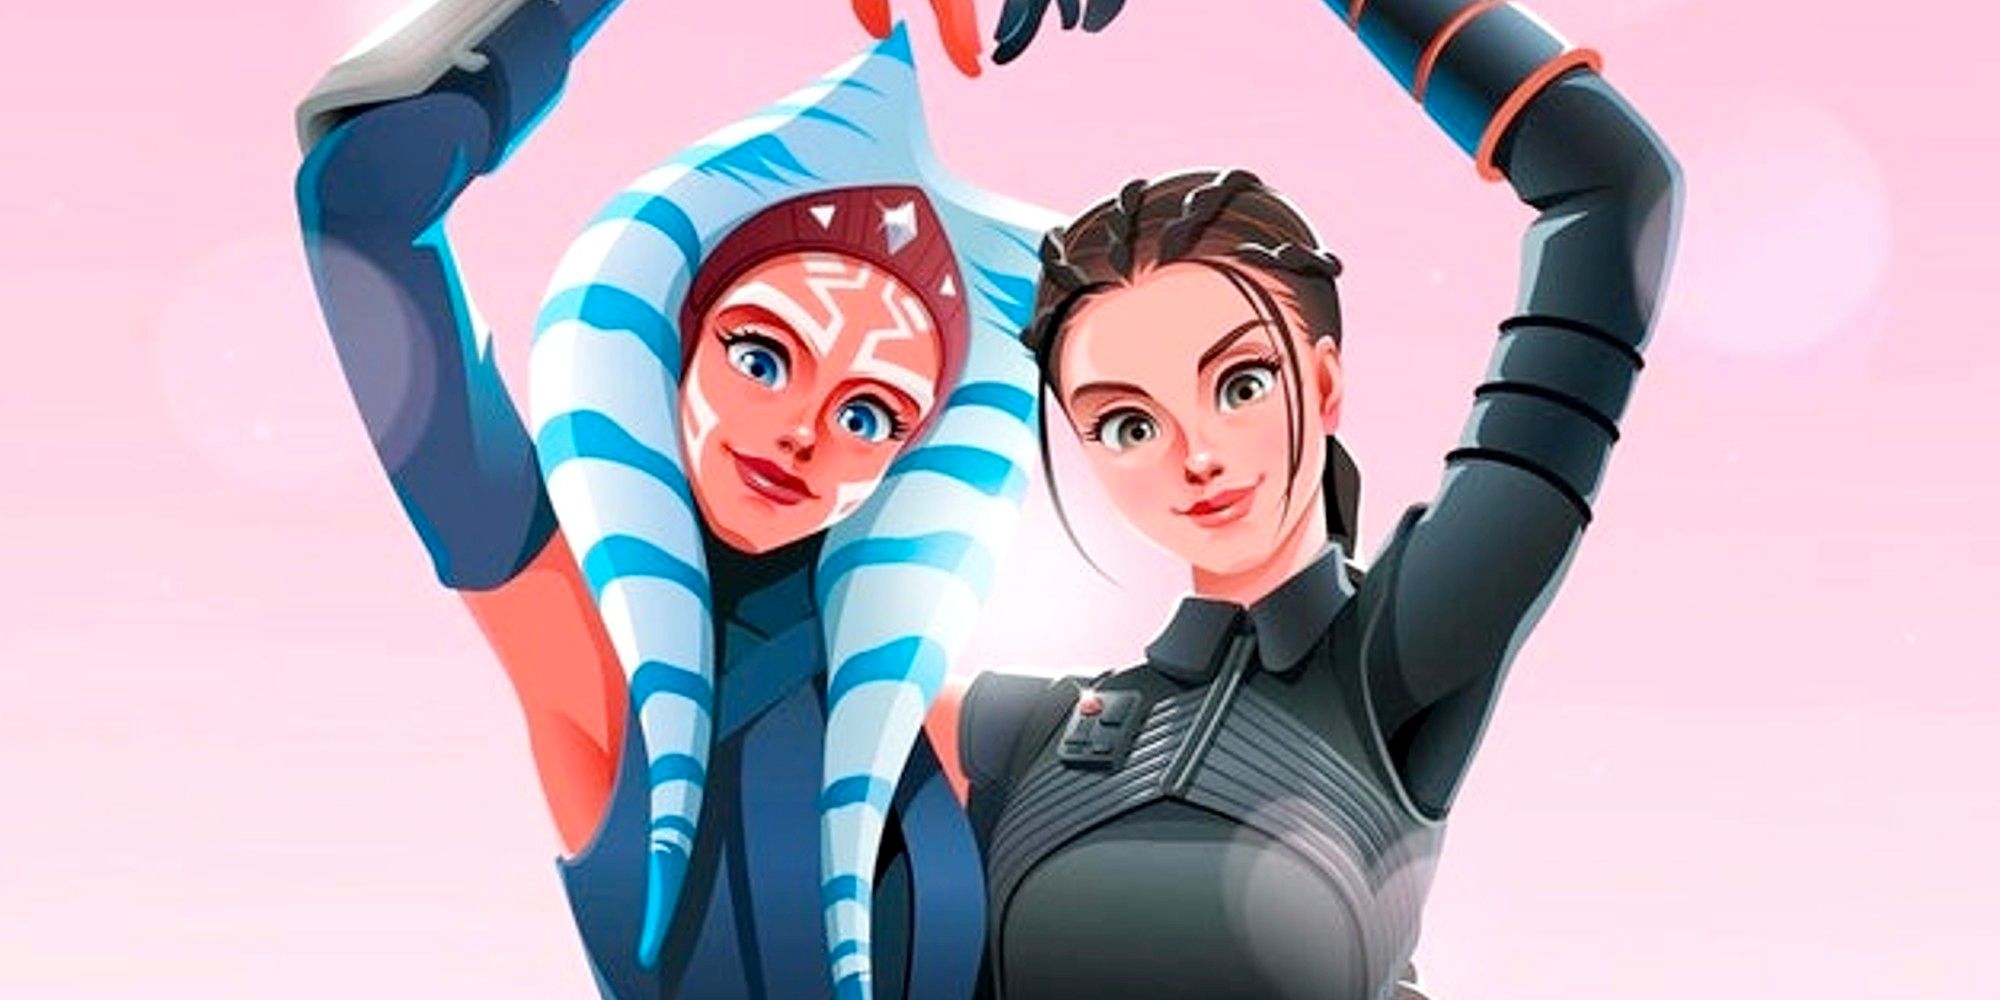 El adorable arte de Star Wars imagina a Fennec Shand y Ahsoka como mejores amigas